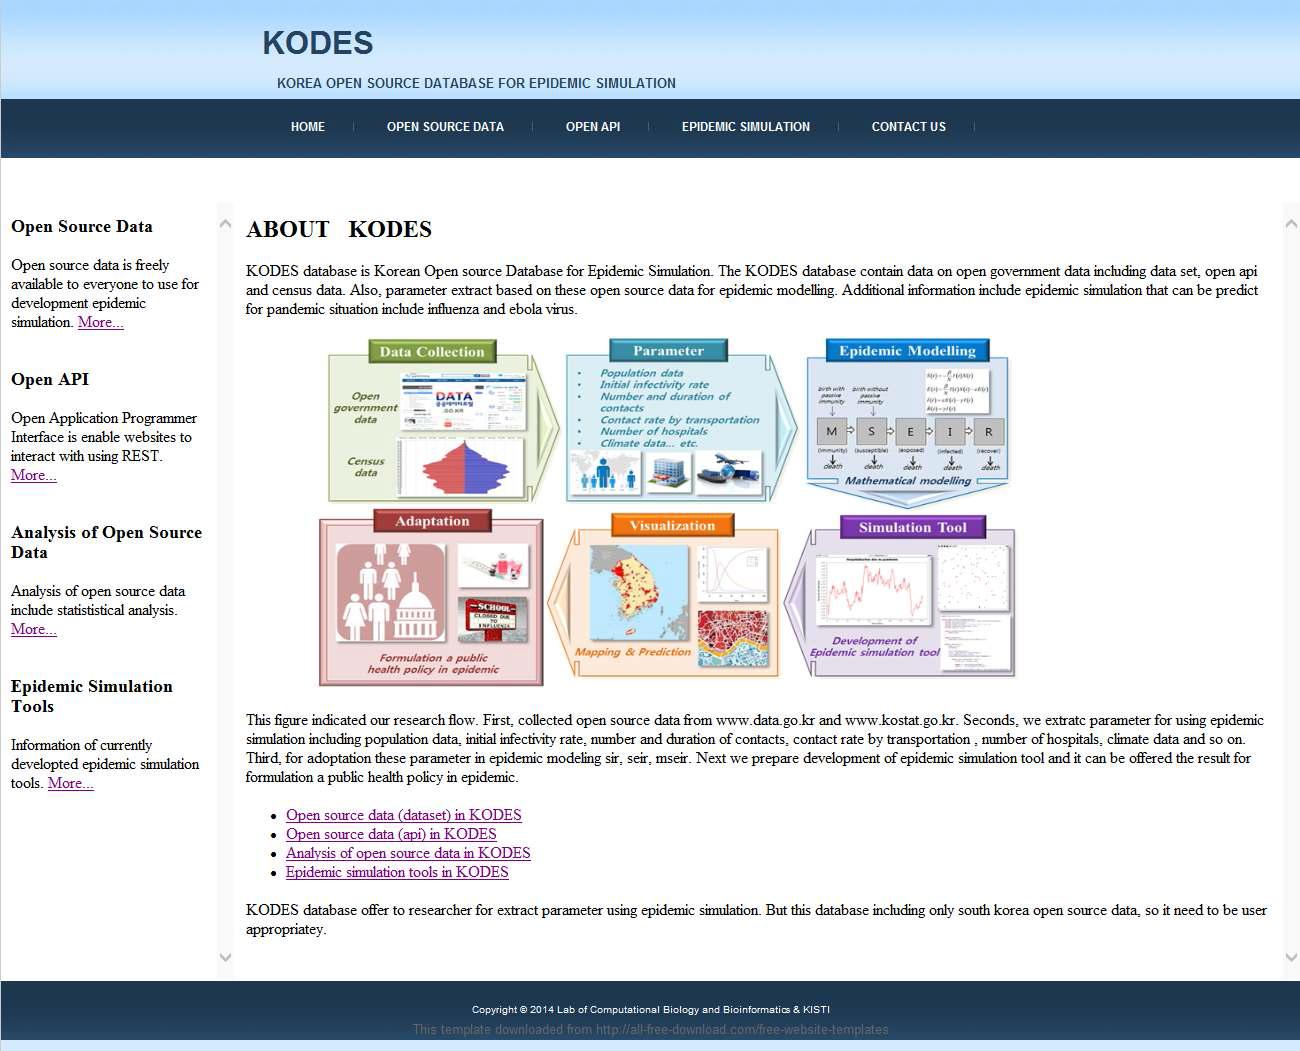 KODES 데이터베이스 메인 페이지